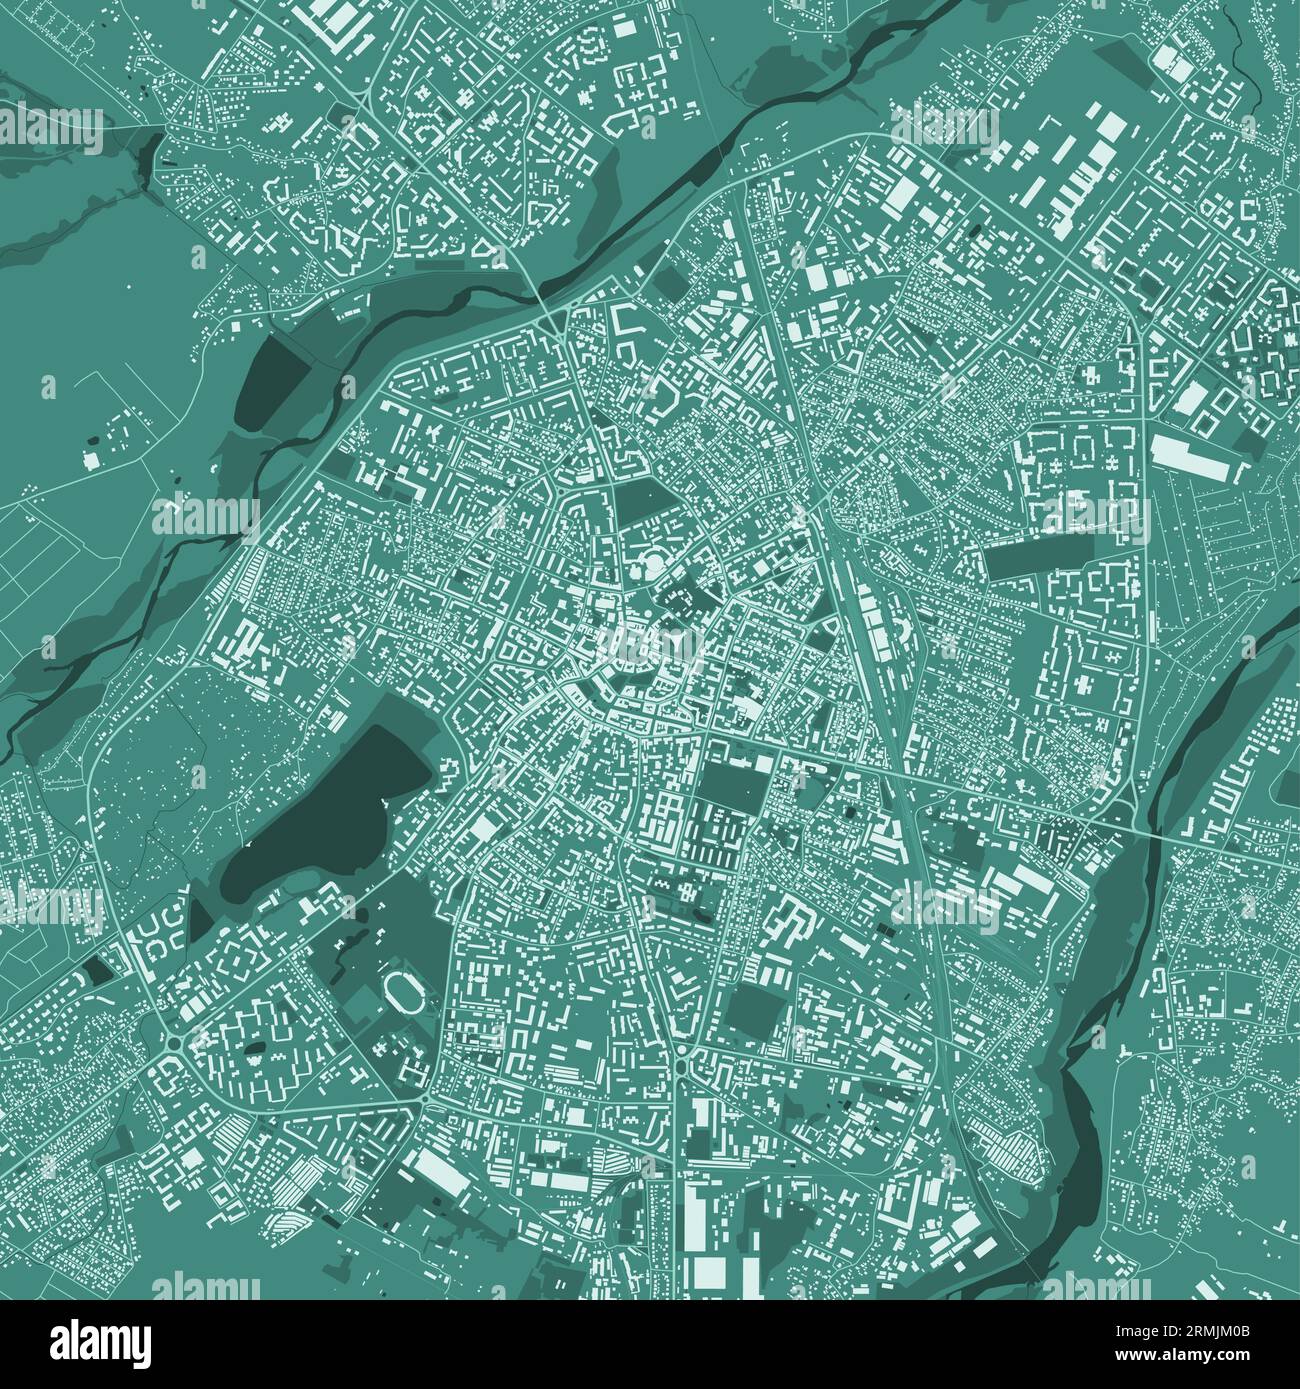 Carte verte d'Ivano-Frankivsk, Ukraine, carte détaillée de la municipalité, panorama Skyline. Carte touristique graphique décorative du territoire de Poltava. vec libre de droits Illustration de Vecteur